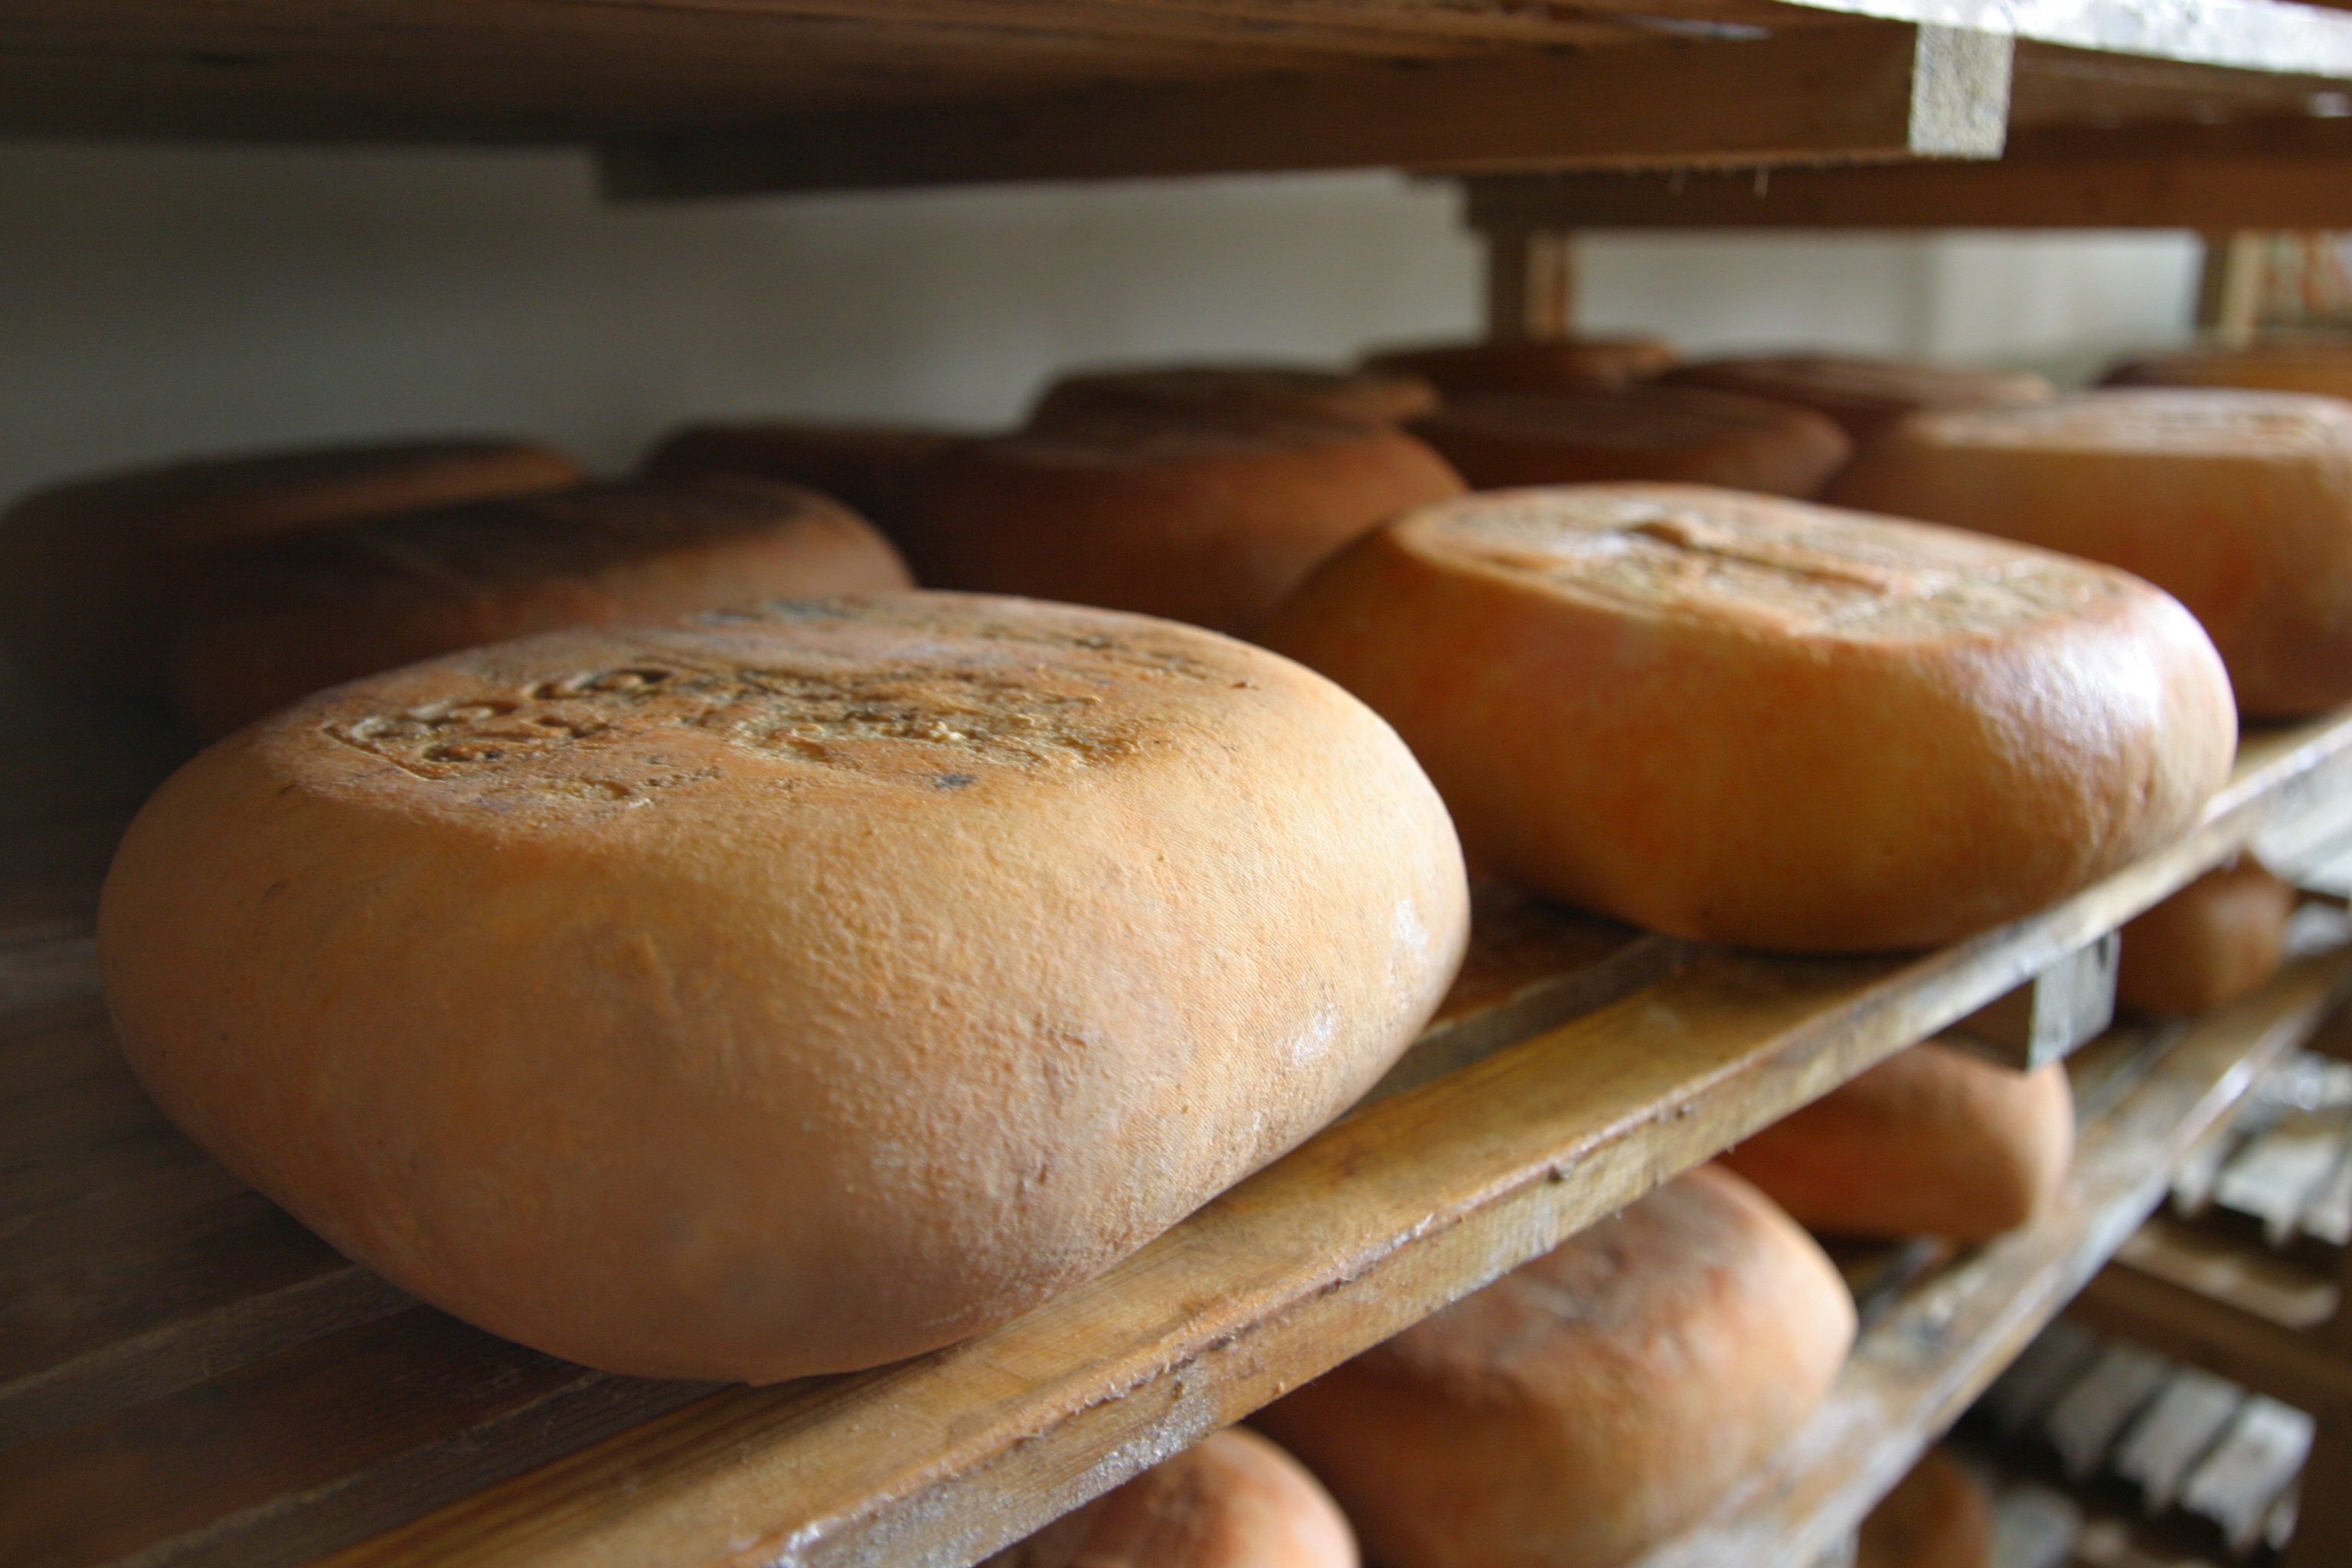 El queso Mahón-Menorca es una fuente natural de calcio - Noticias - Islas Baleares - Productos agroalimentarios, denominaciones de origen y gastronomía balear